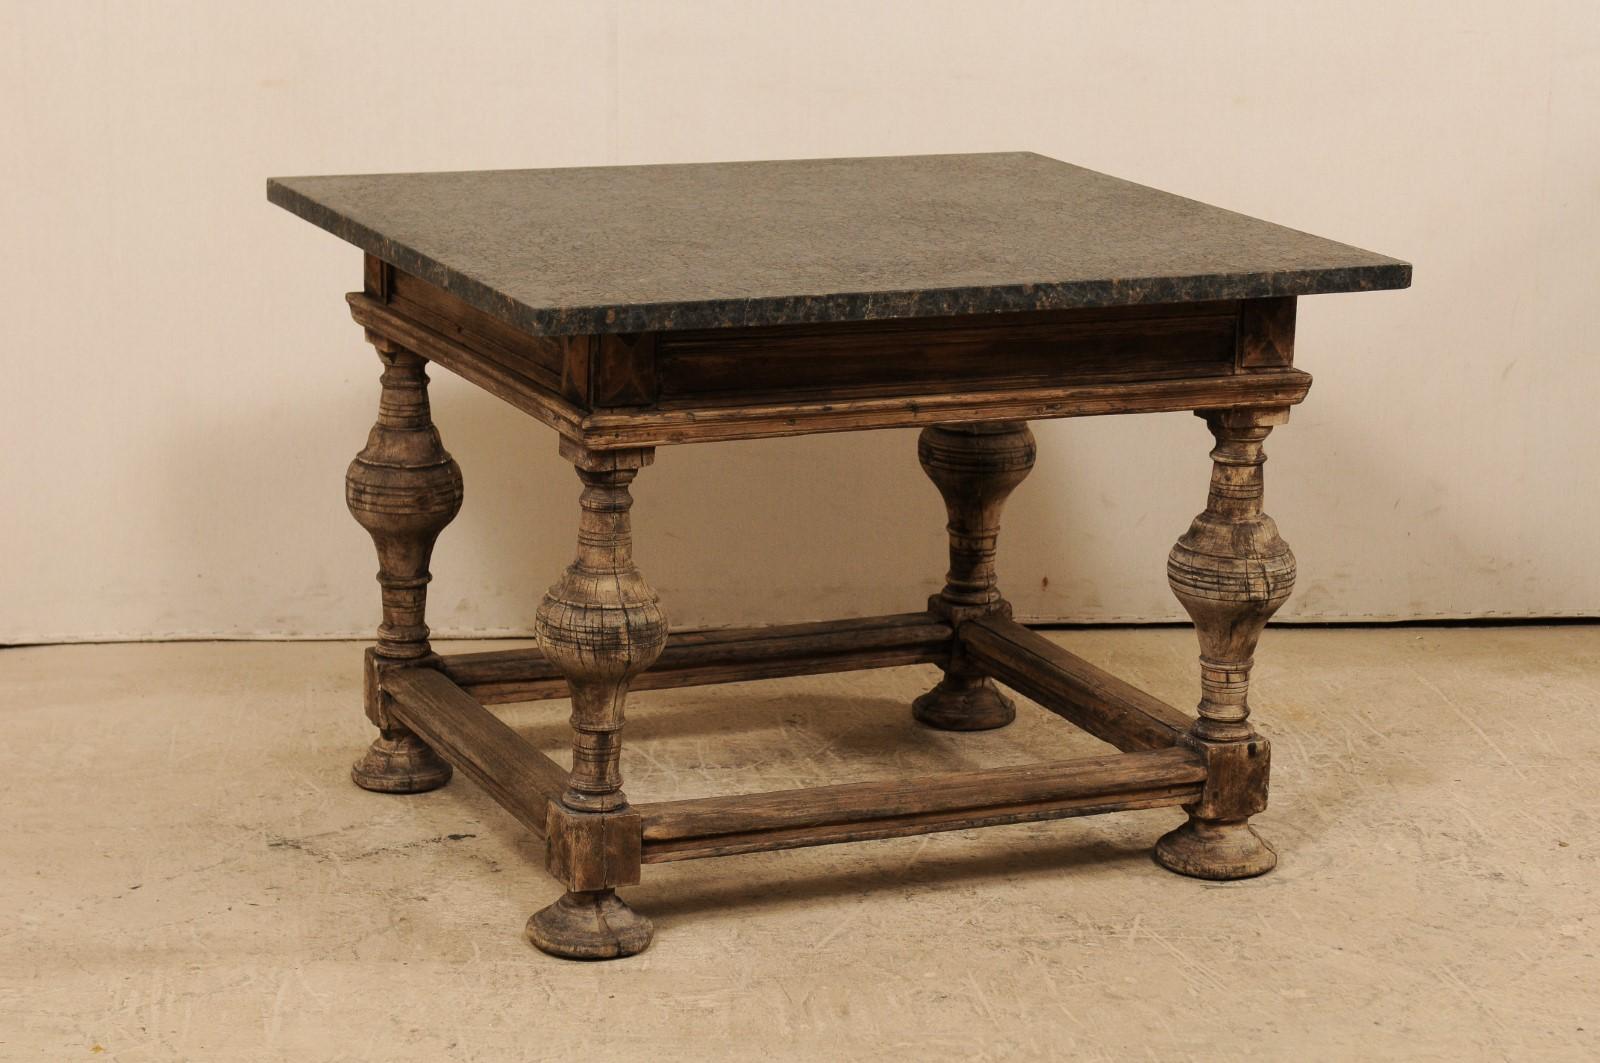 Une table baroque suédoise du 18e siècle avec un plateau en granit adouci plus récent. Cette table d'appoint baroque de Suède présente un plateau en marbre adouci qui repose sur un cadre en bois robuste doté d'une jupe joliment moulée et de pieds,